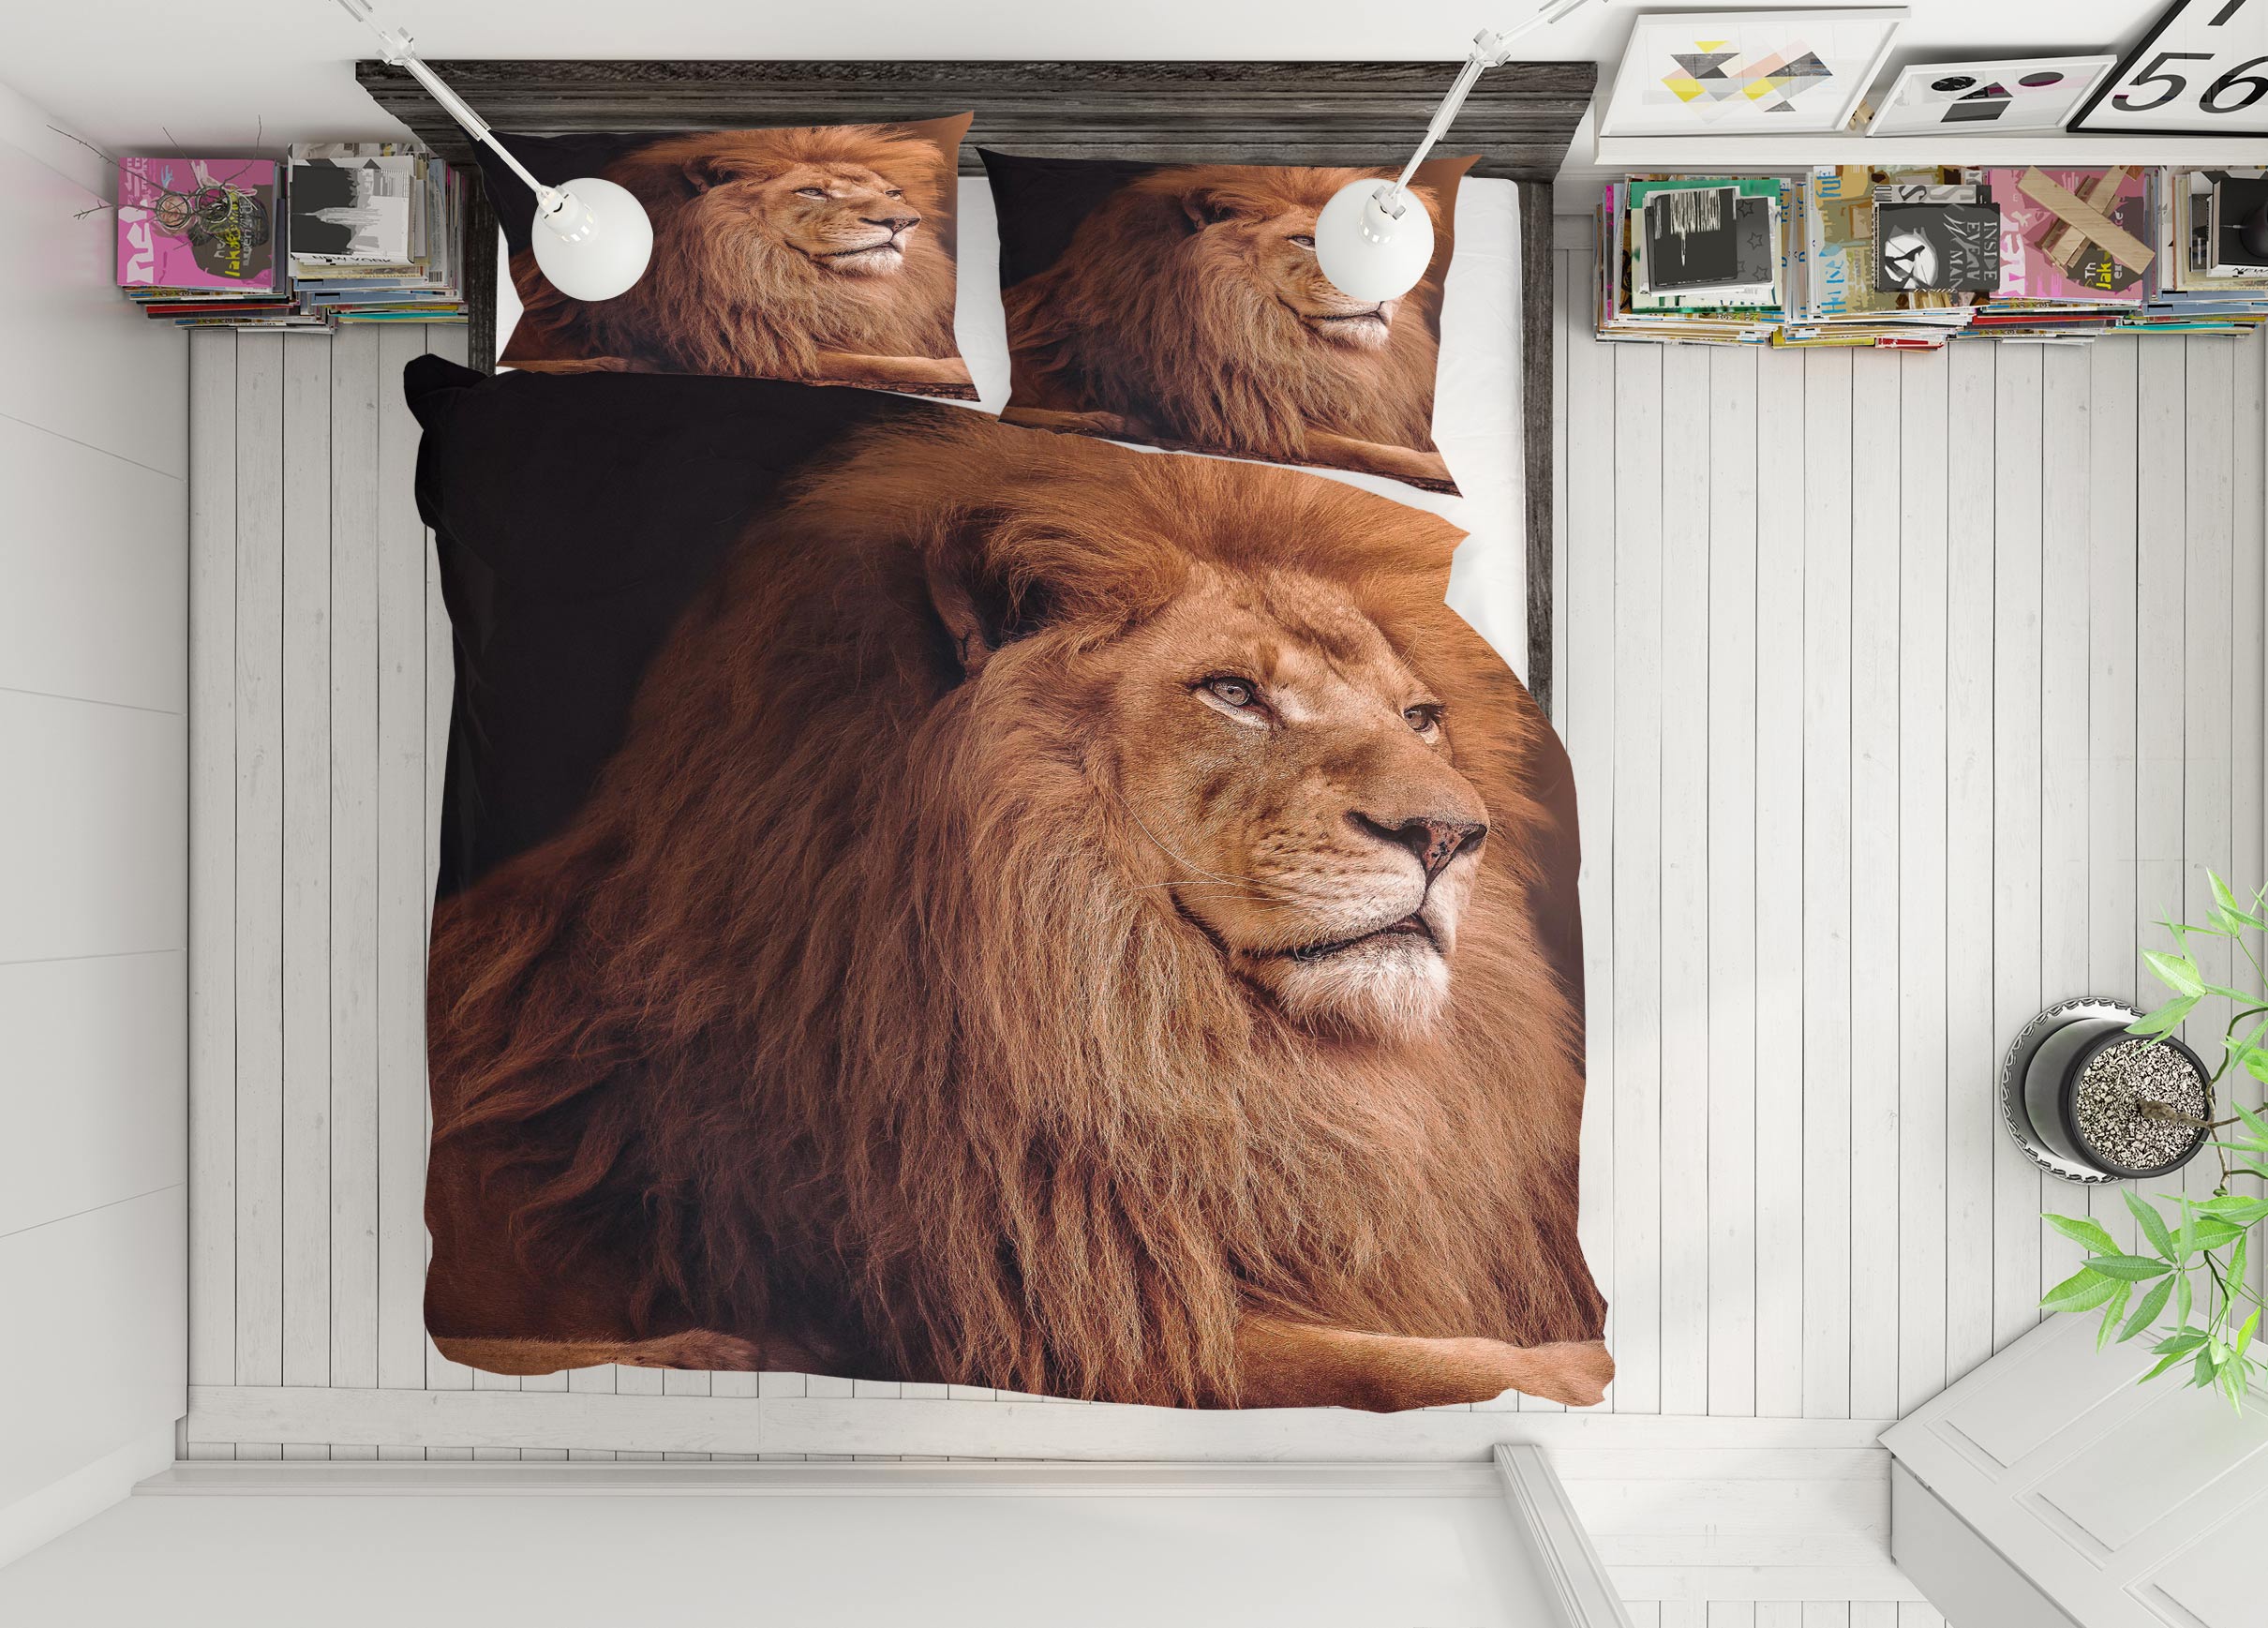 3D Lion 72034 Bed Pillowcases Quilt